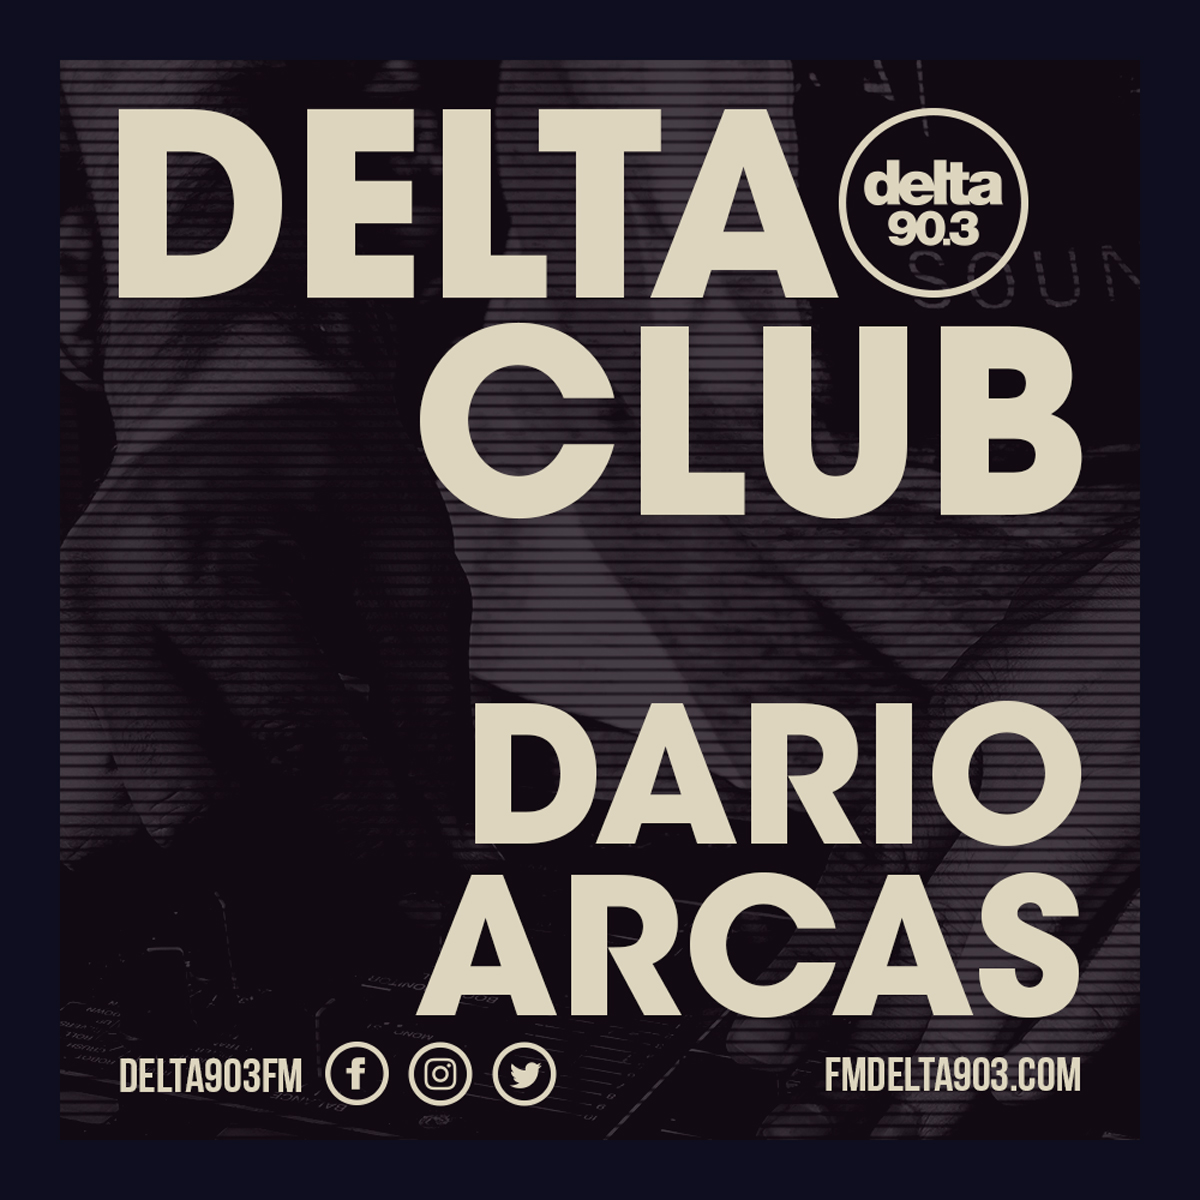 Delta Podcasts - Delta Club presents Dario Arcas (16.05.2018)